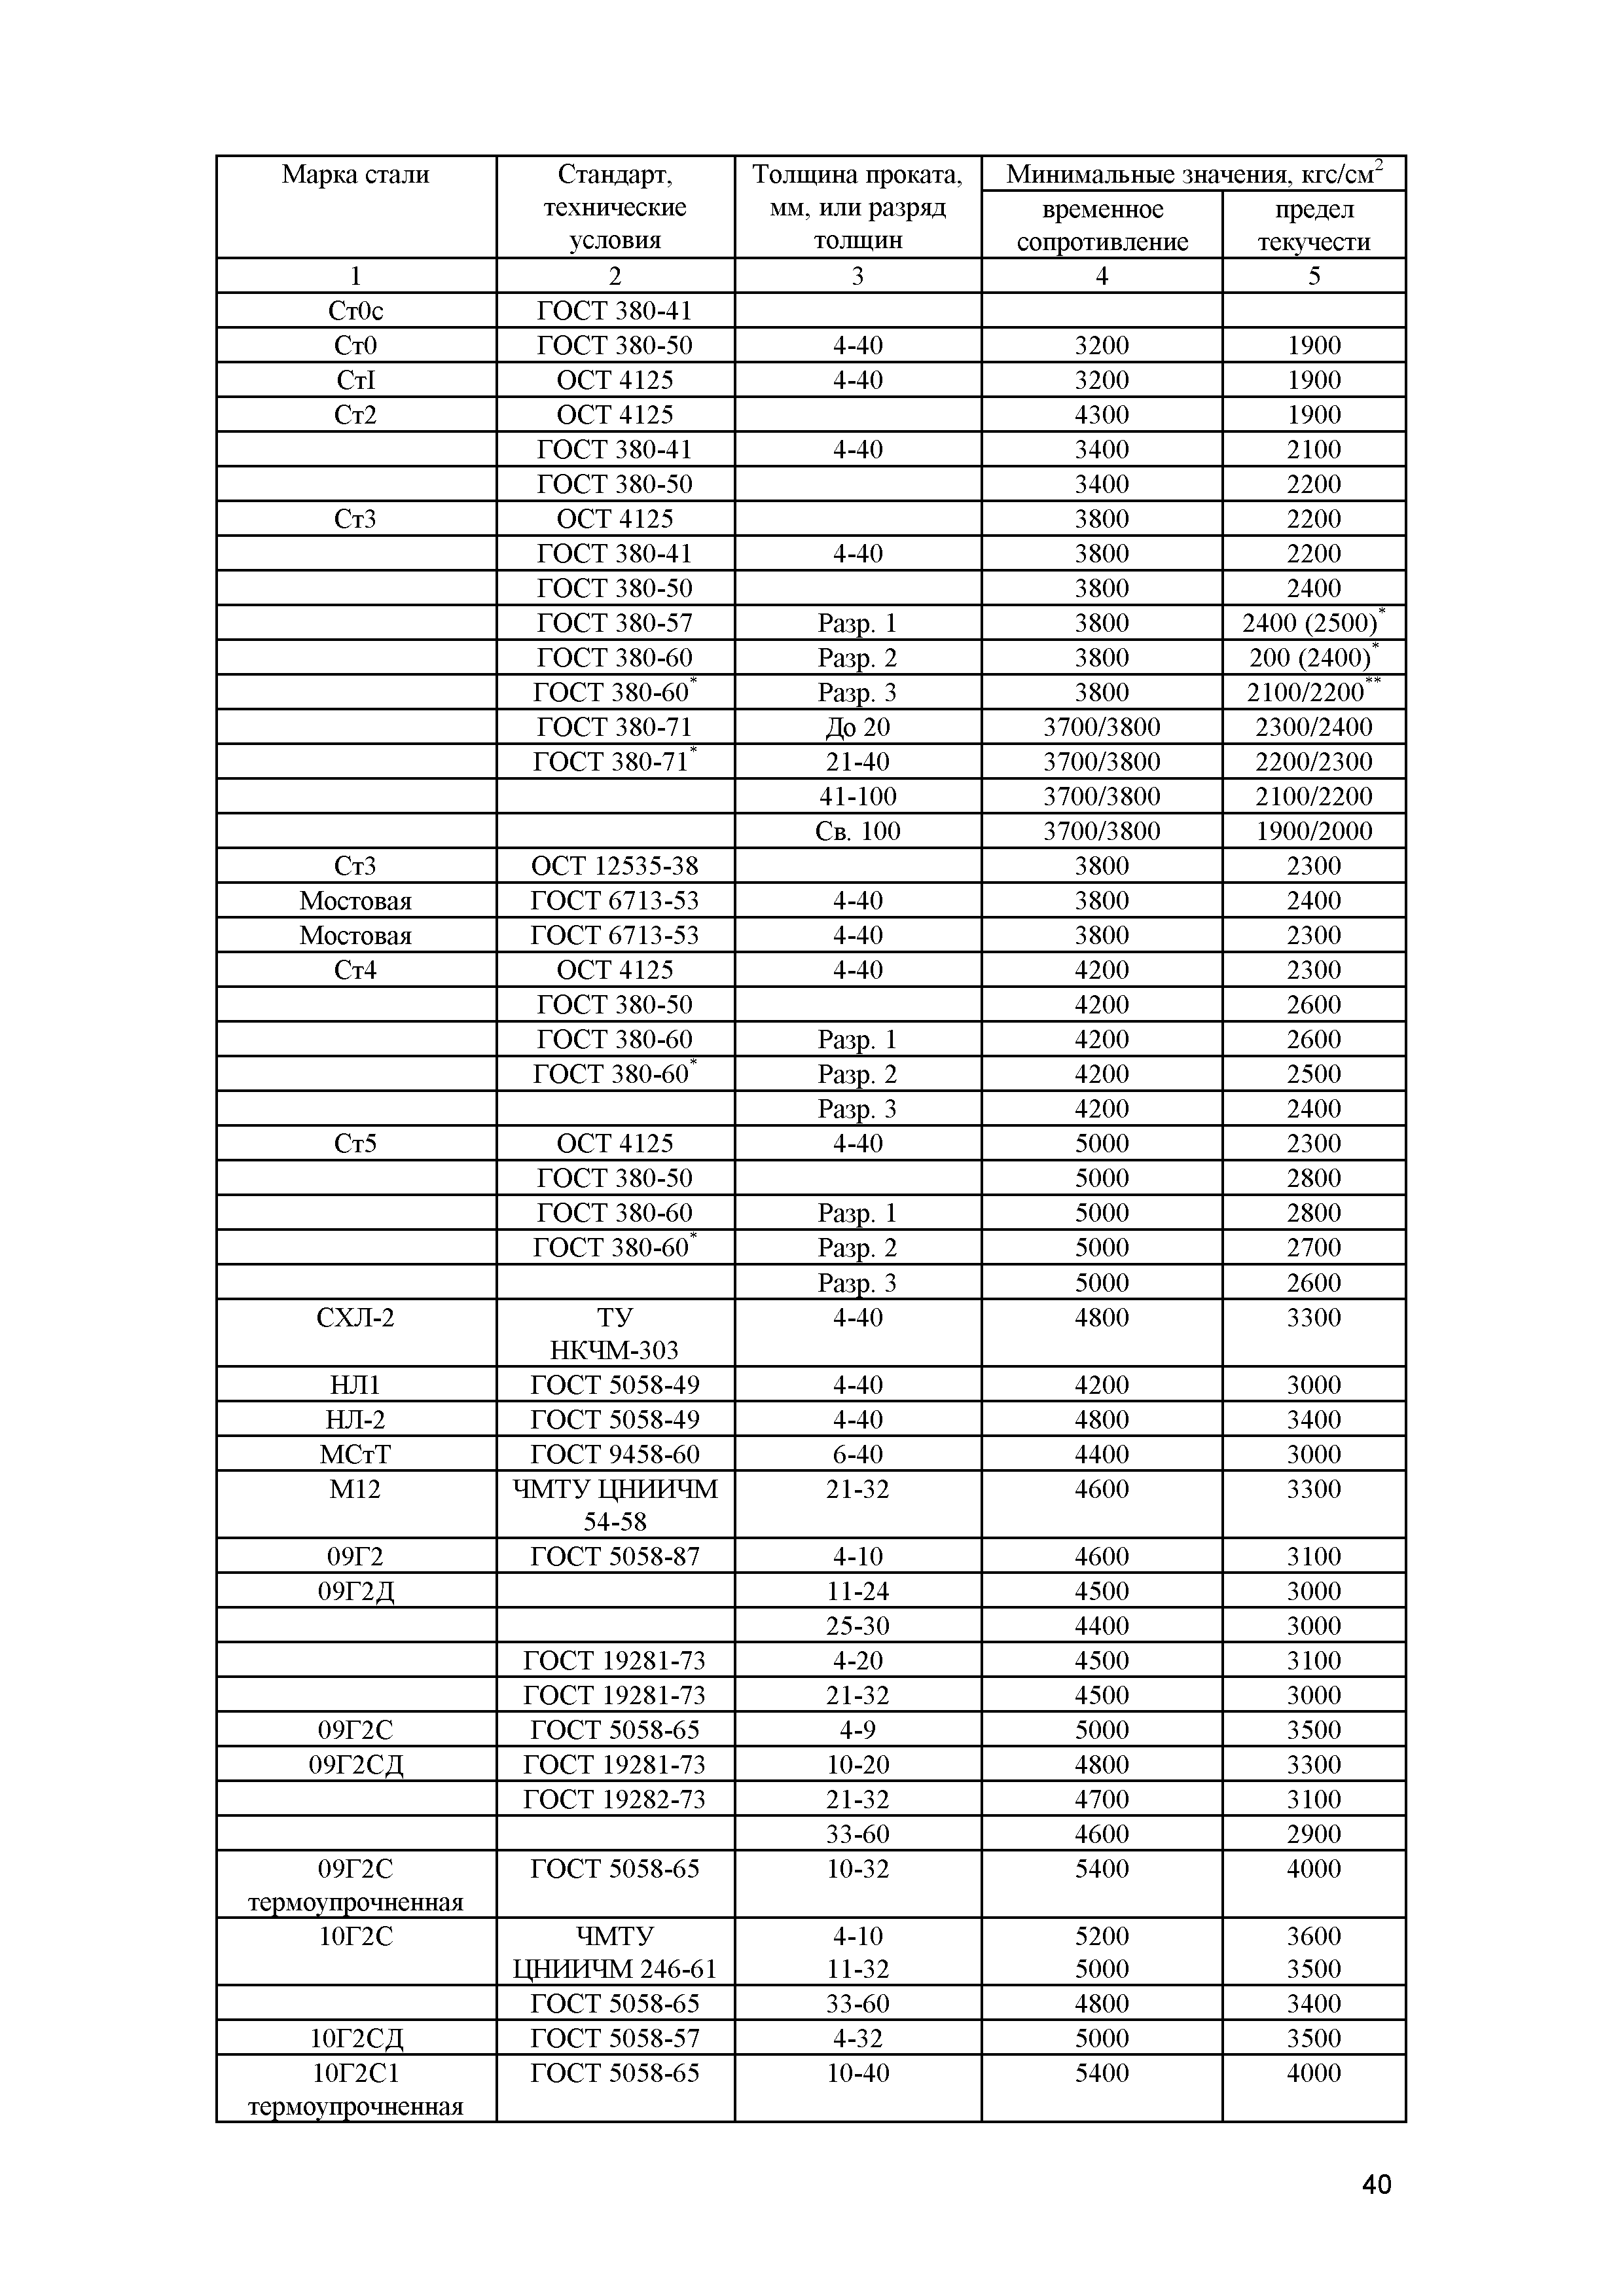 СП 13-102-2003*